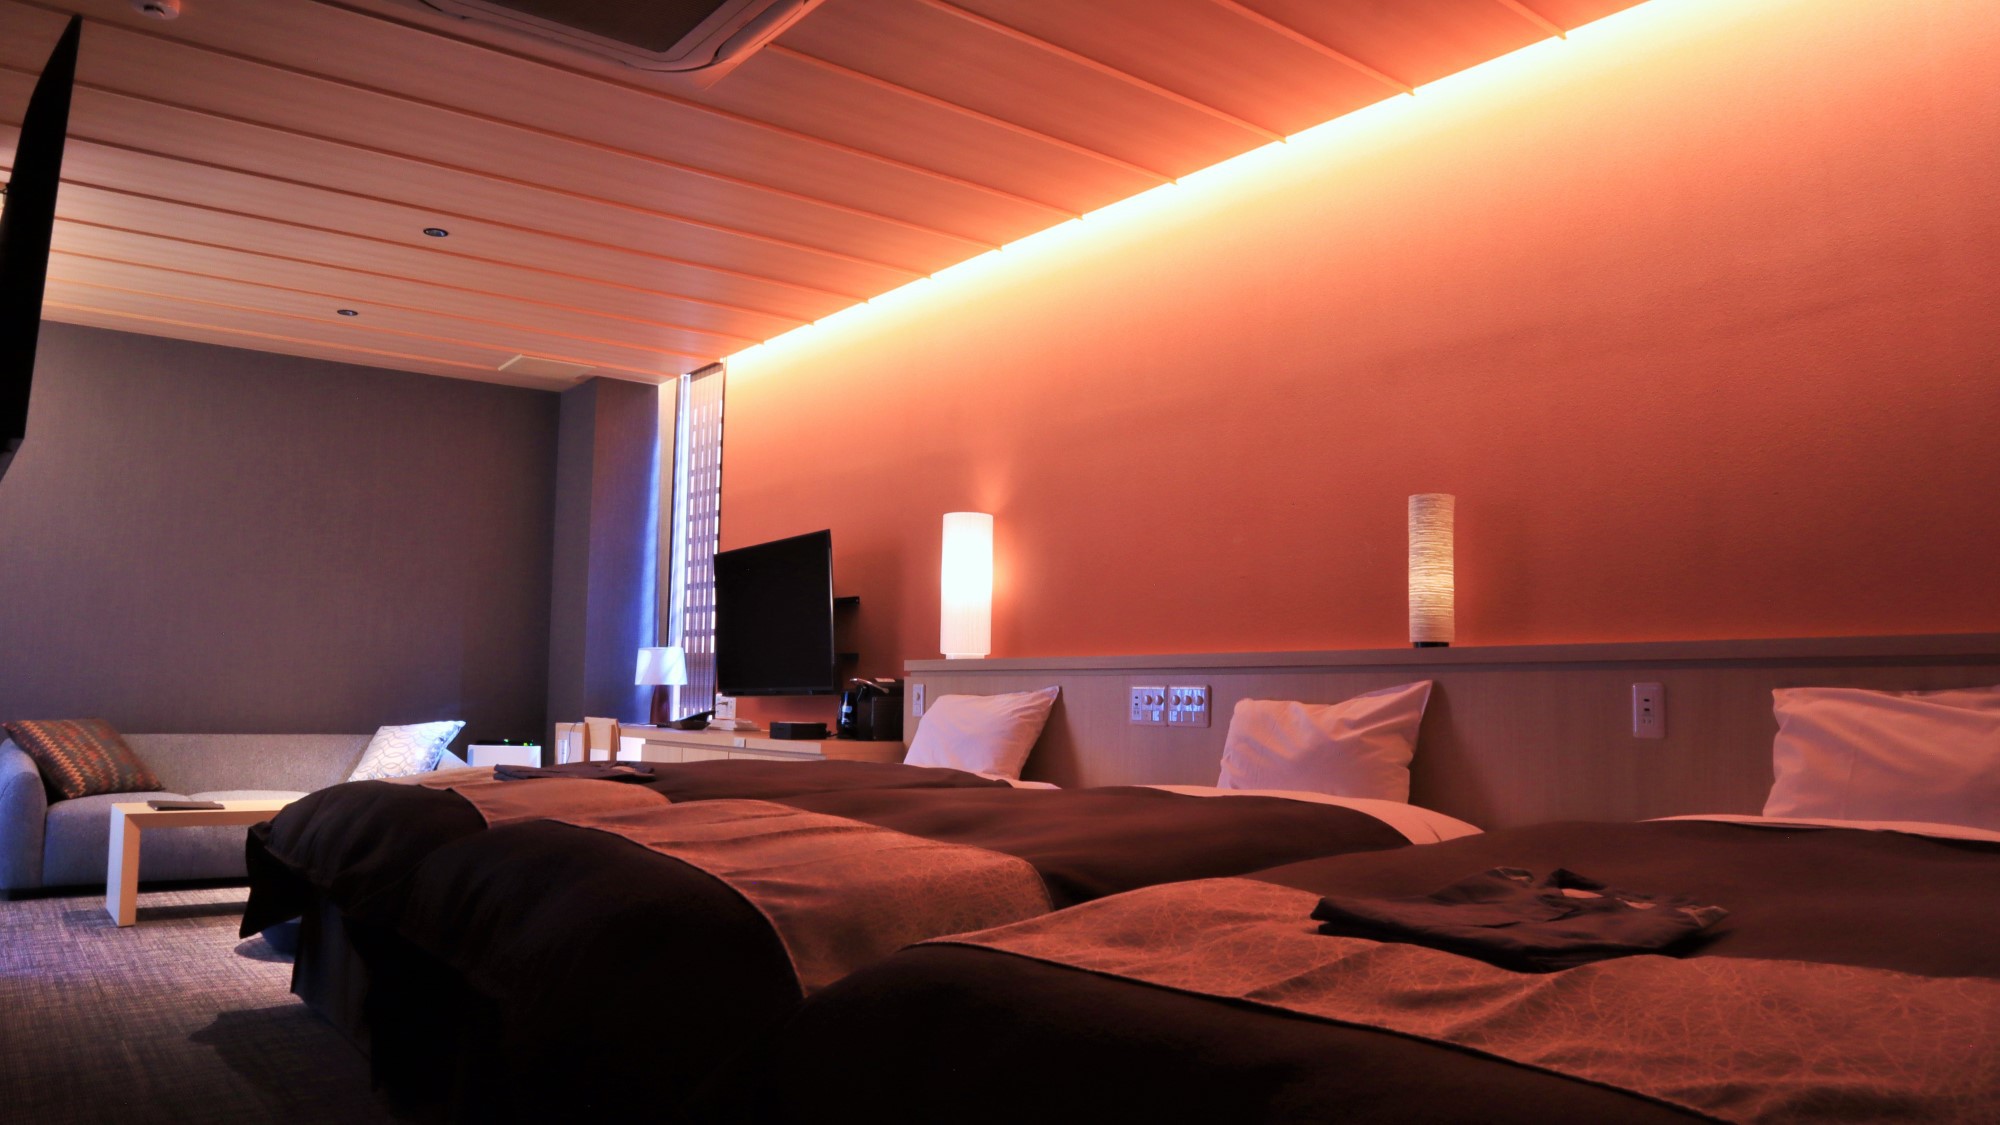 洋モダン〜Executive Type〜機能性と心地よさを兼ね備えたこだわりの客室。